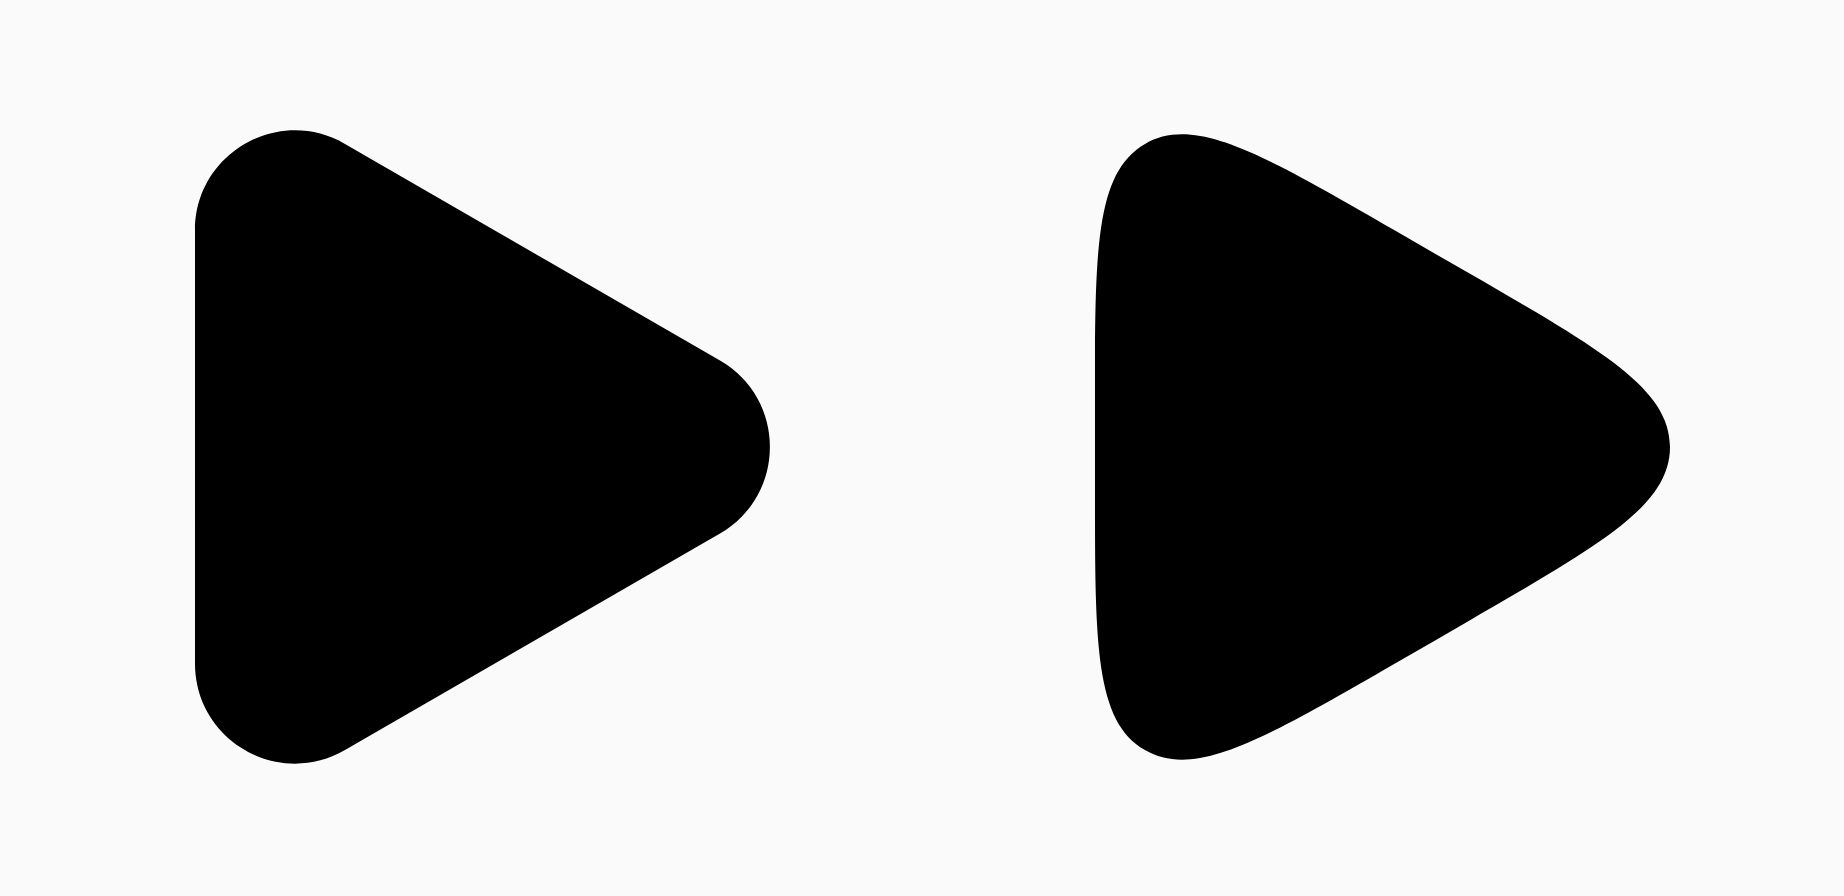 Due triangoli neri che mostrano la differenza
nel parametro di livellamento.